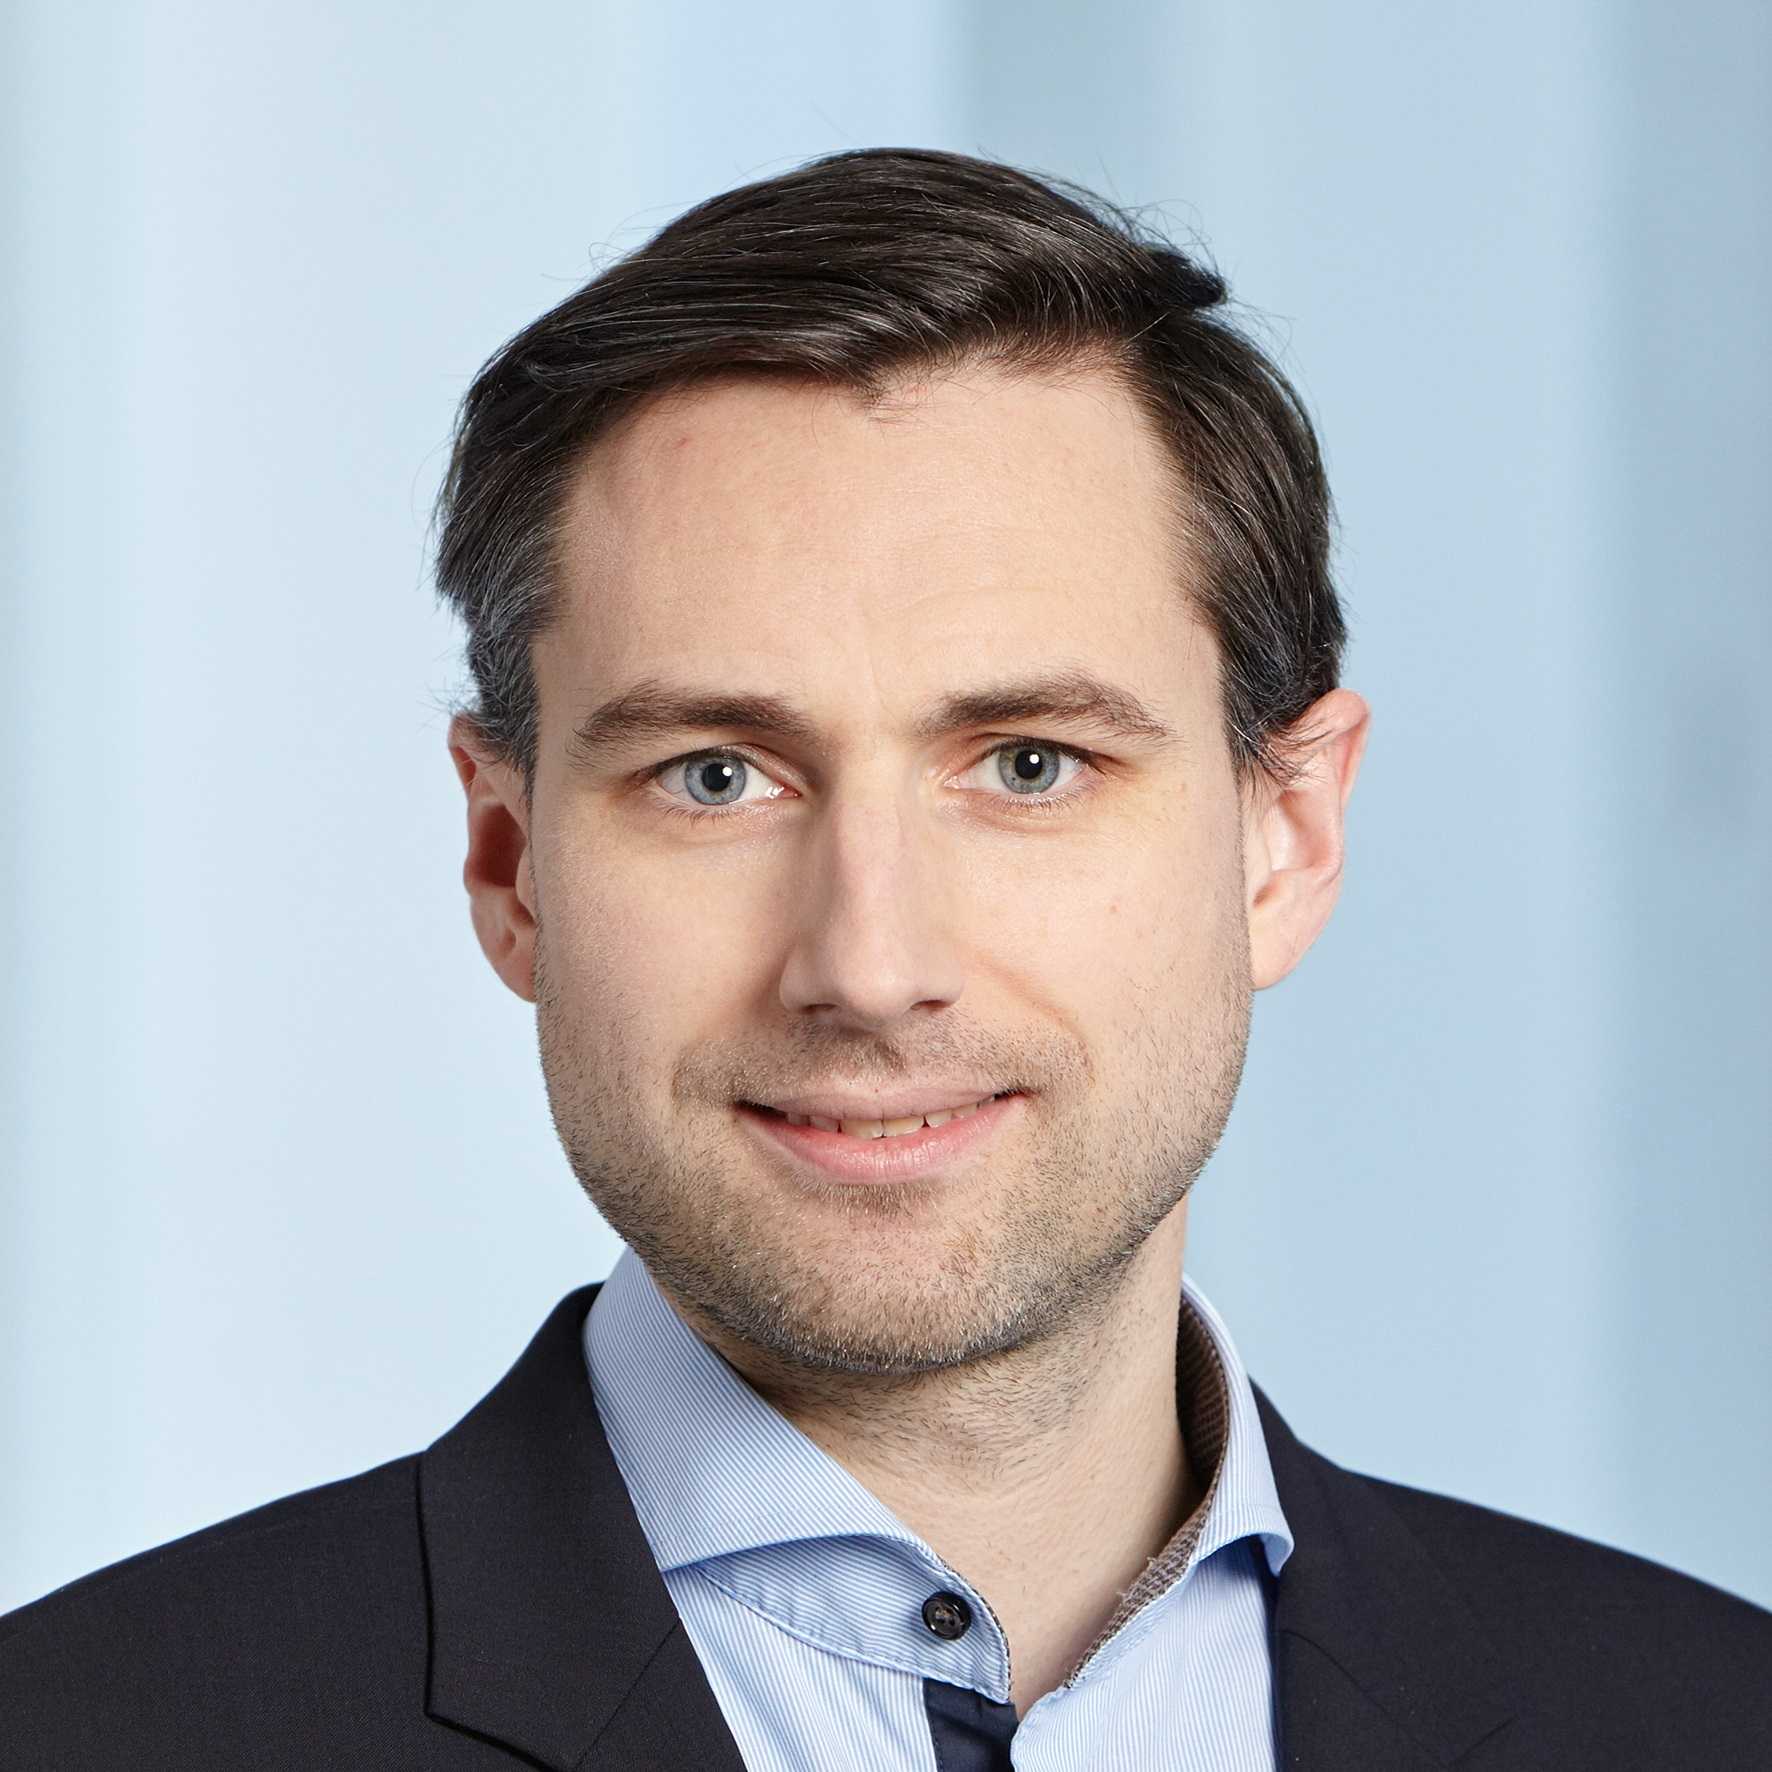 Heiner Mikosch, KOF Economist